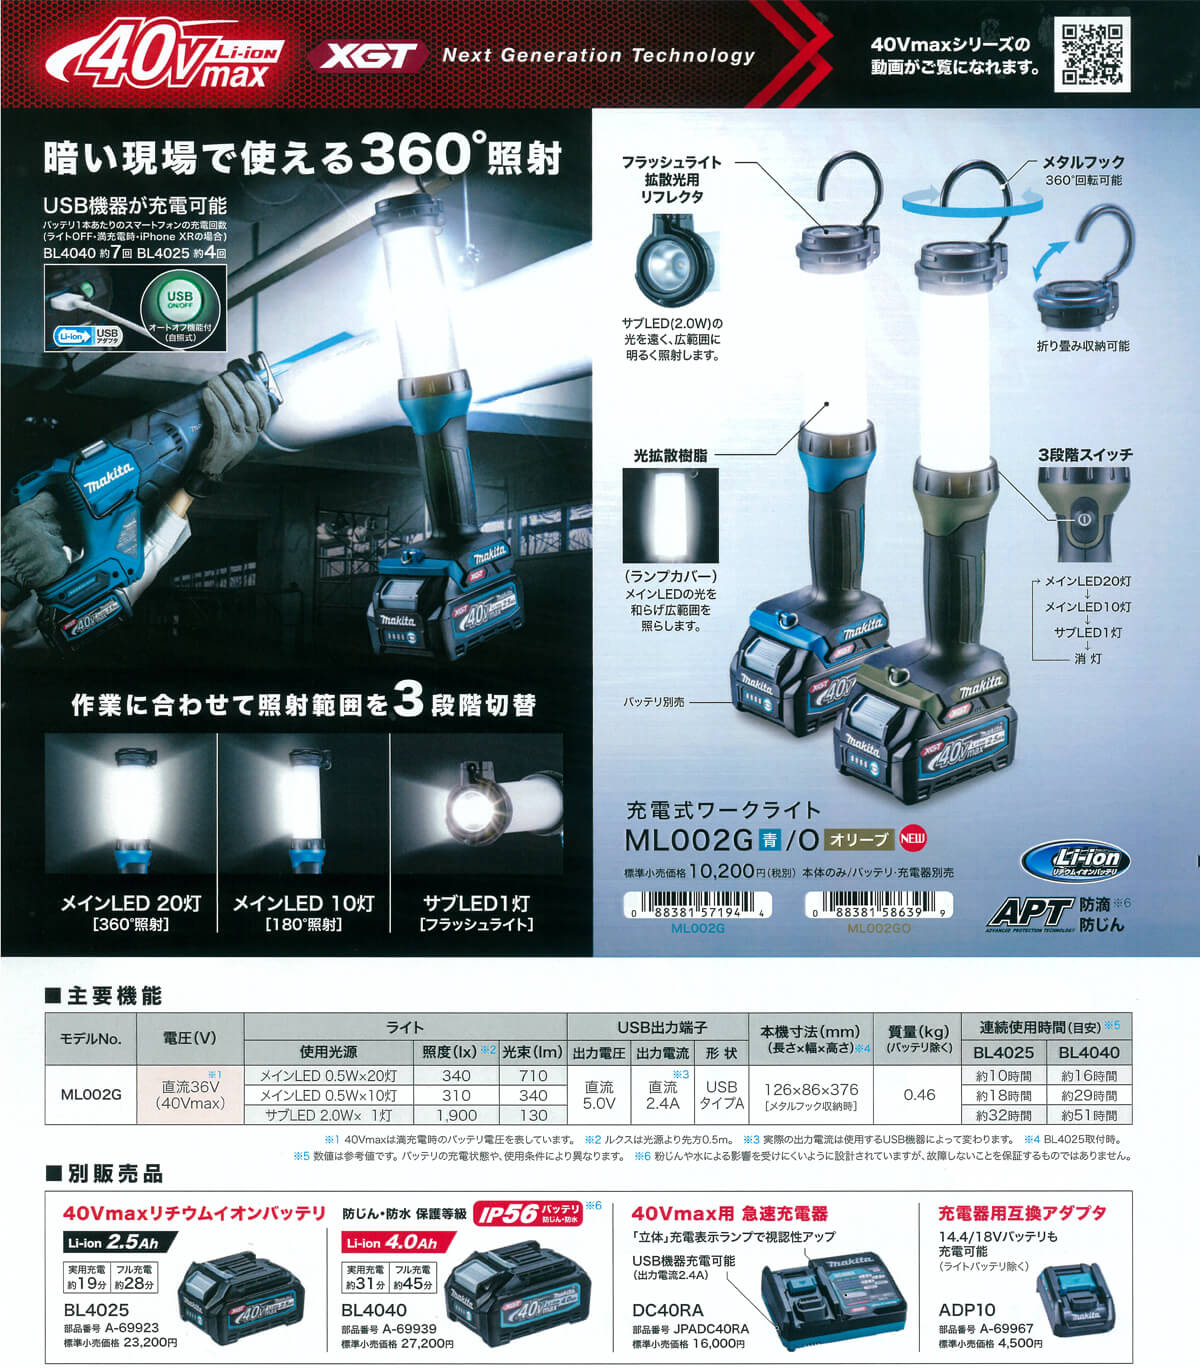 マキタ ML002G 40Vmax充電式ワークライト ウエダ金物【公式サイト】